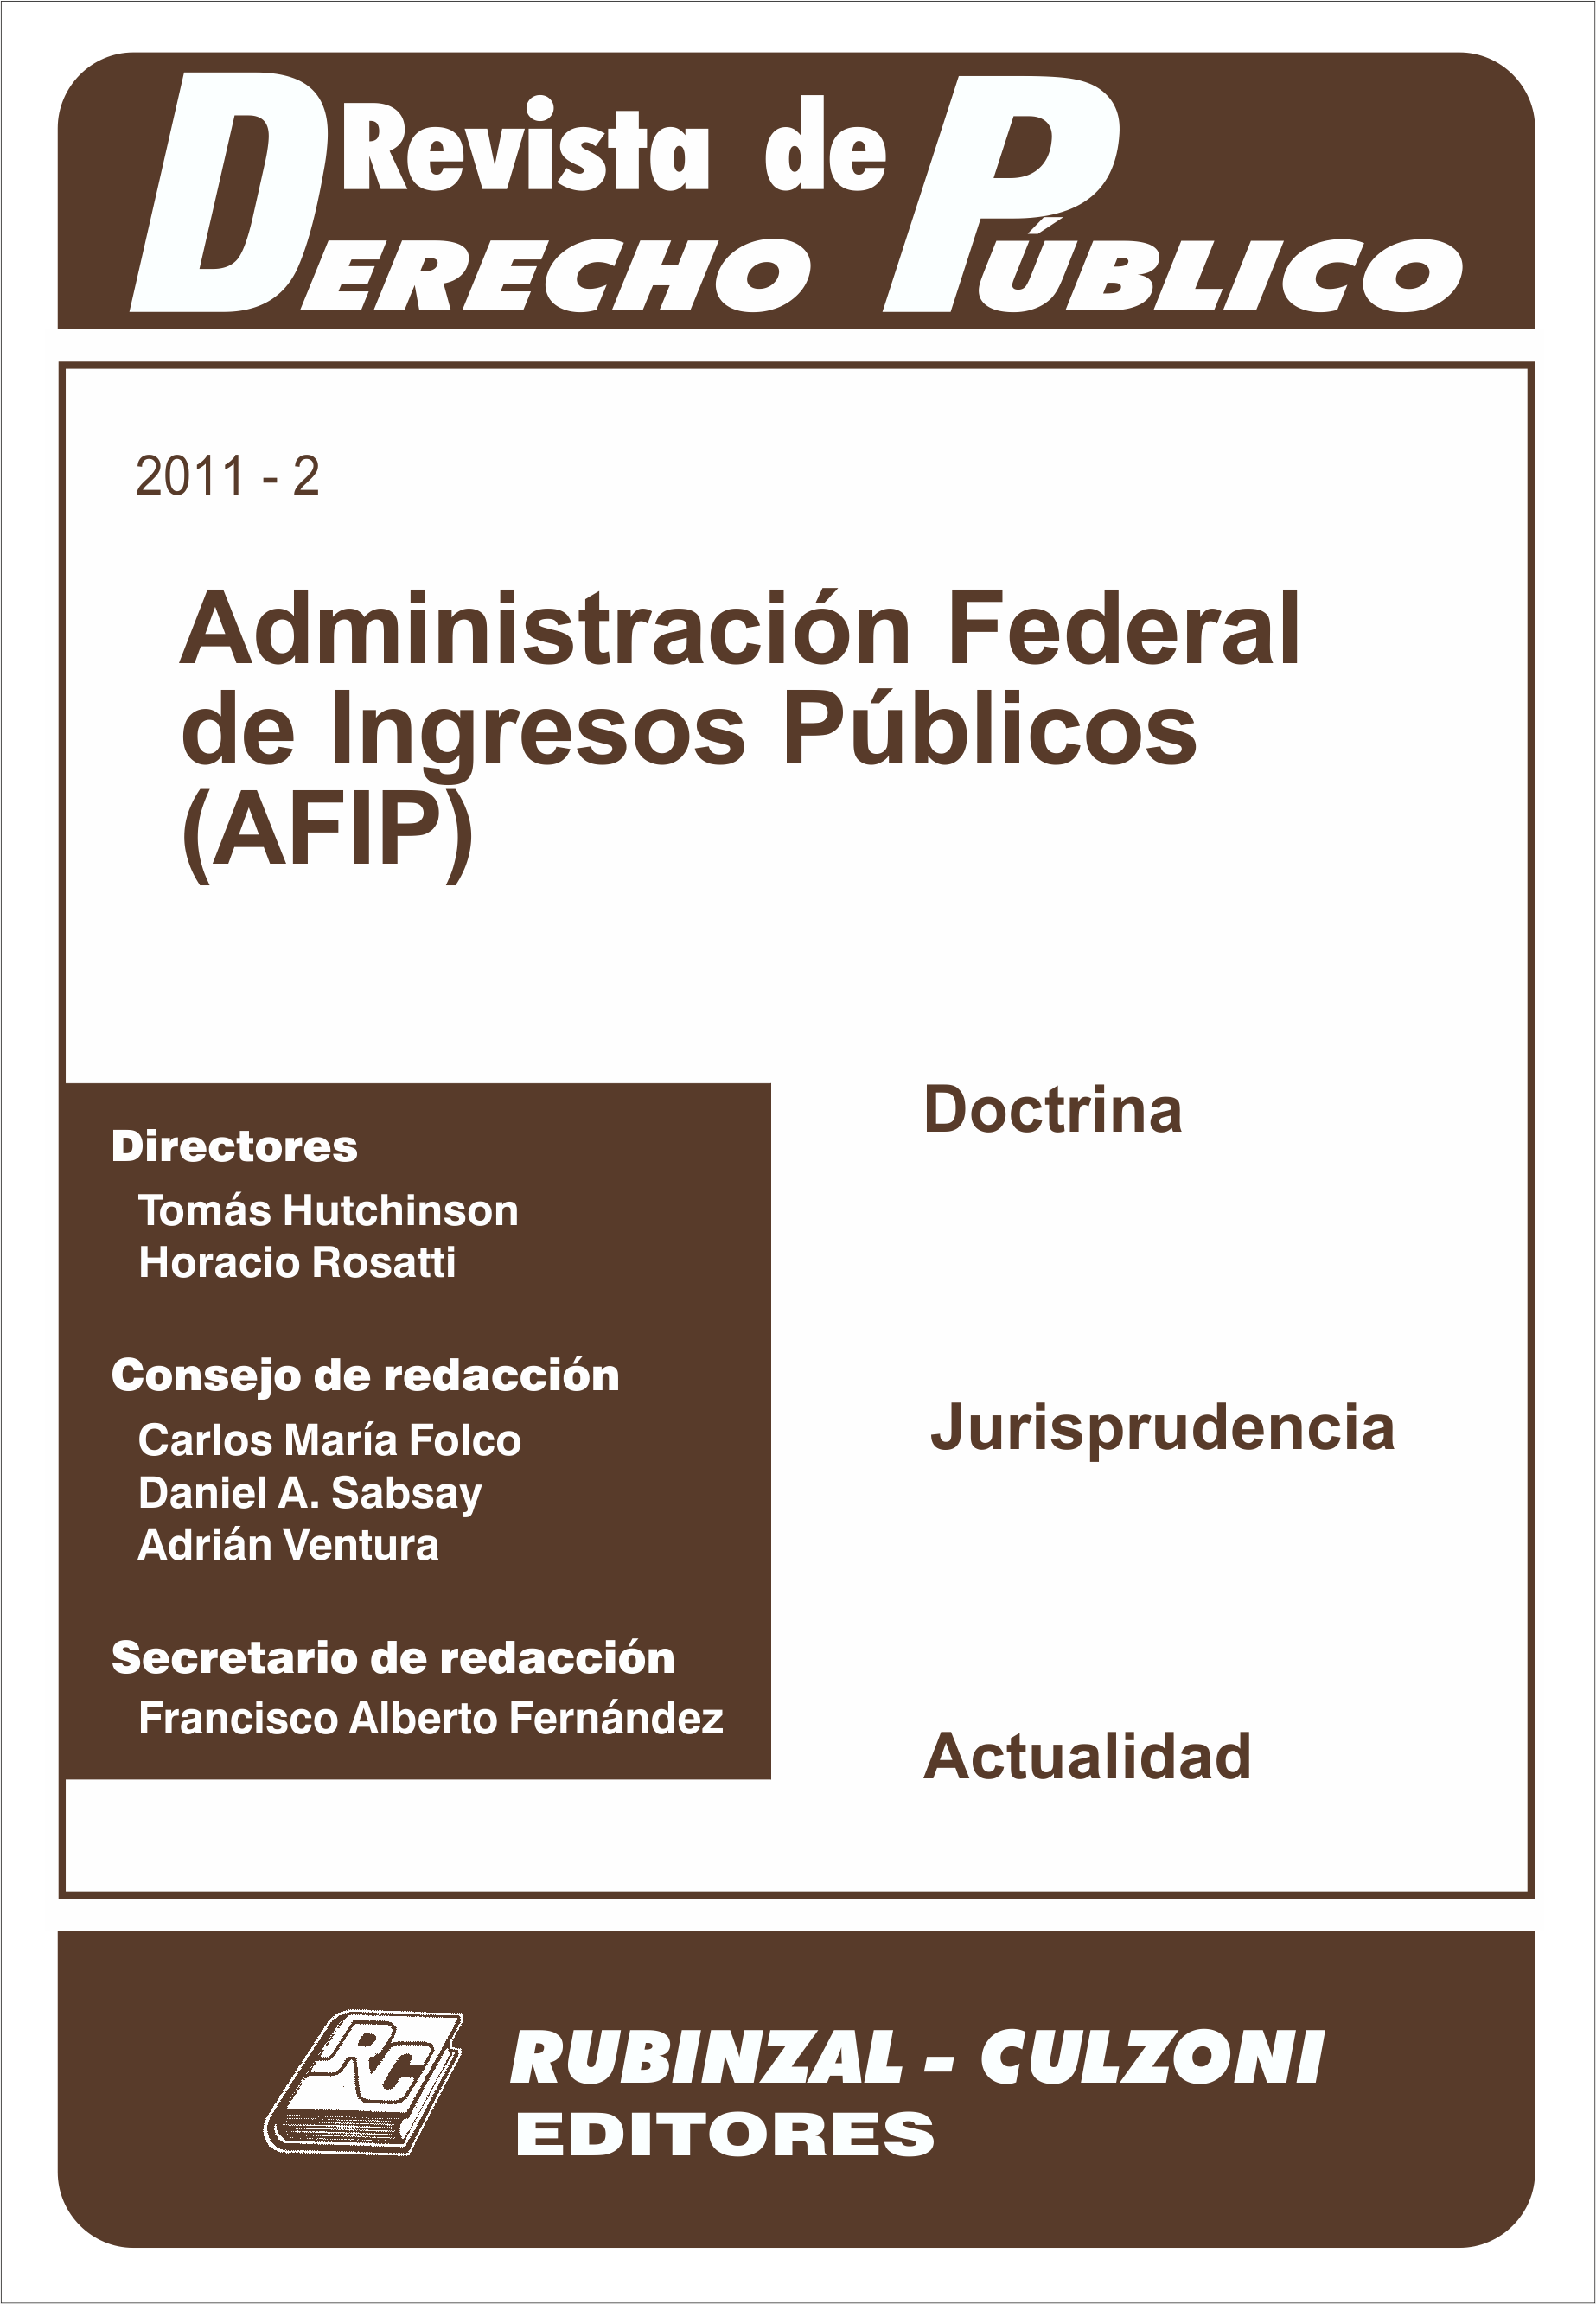 Revista de Derecho Público - Administración Federal de Ingresos Públicos 